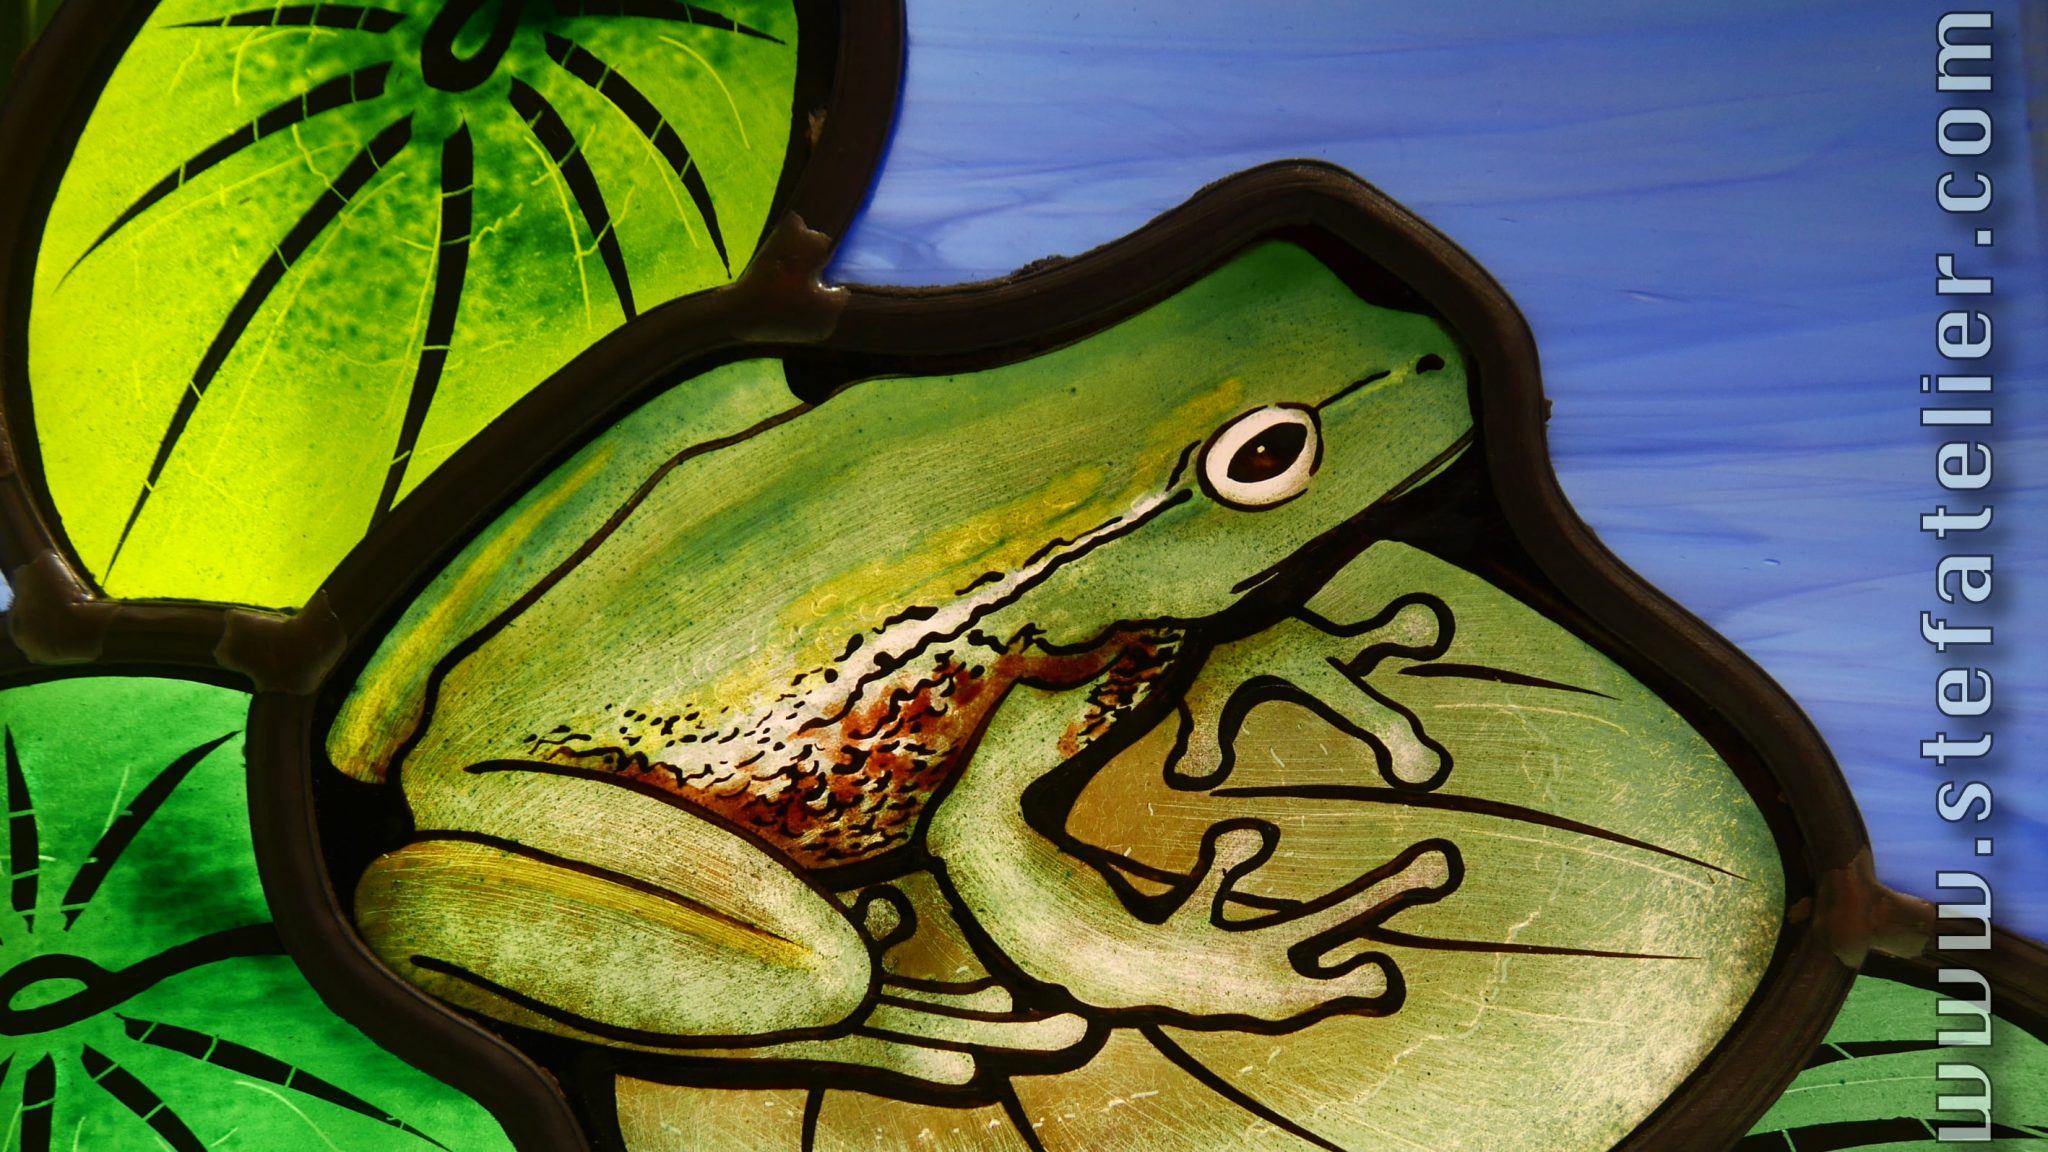 détail vitrail grenouille sur feuille de nénuphar